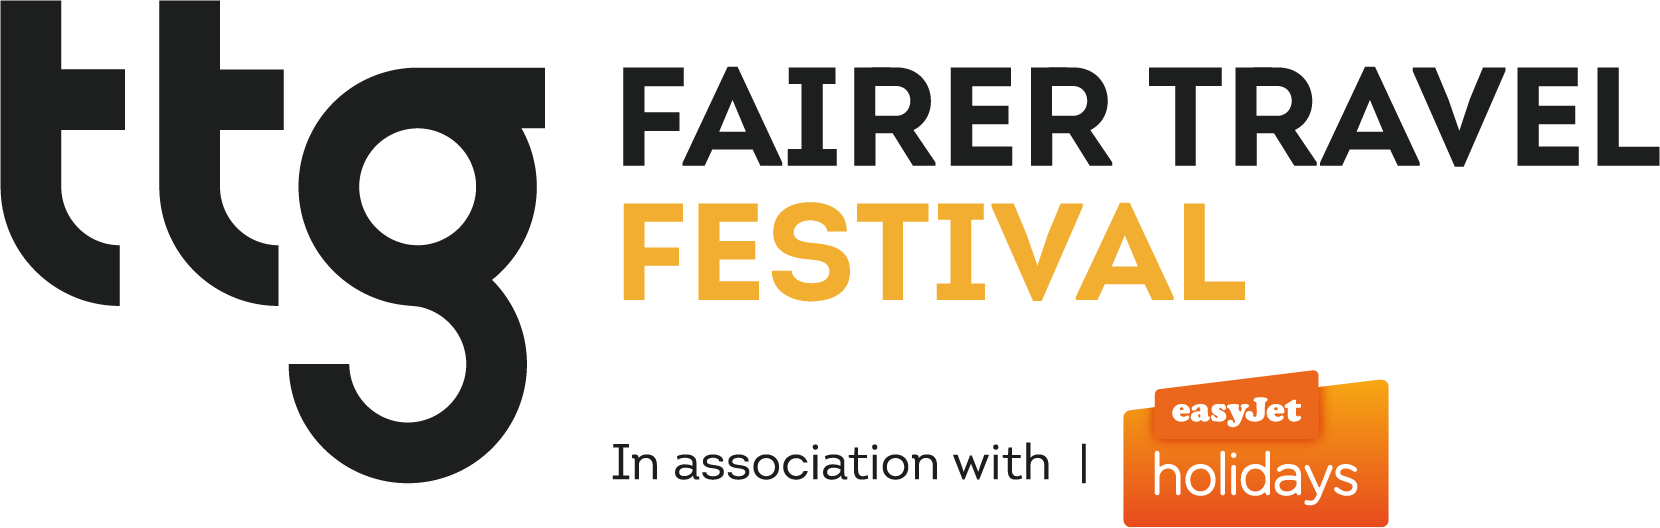 TTG Fairer Travel Festival